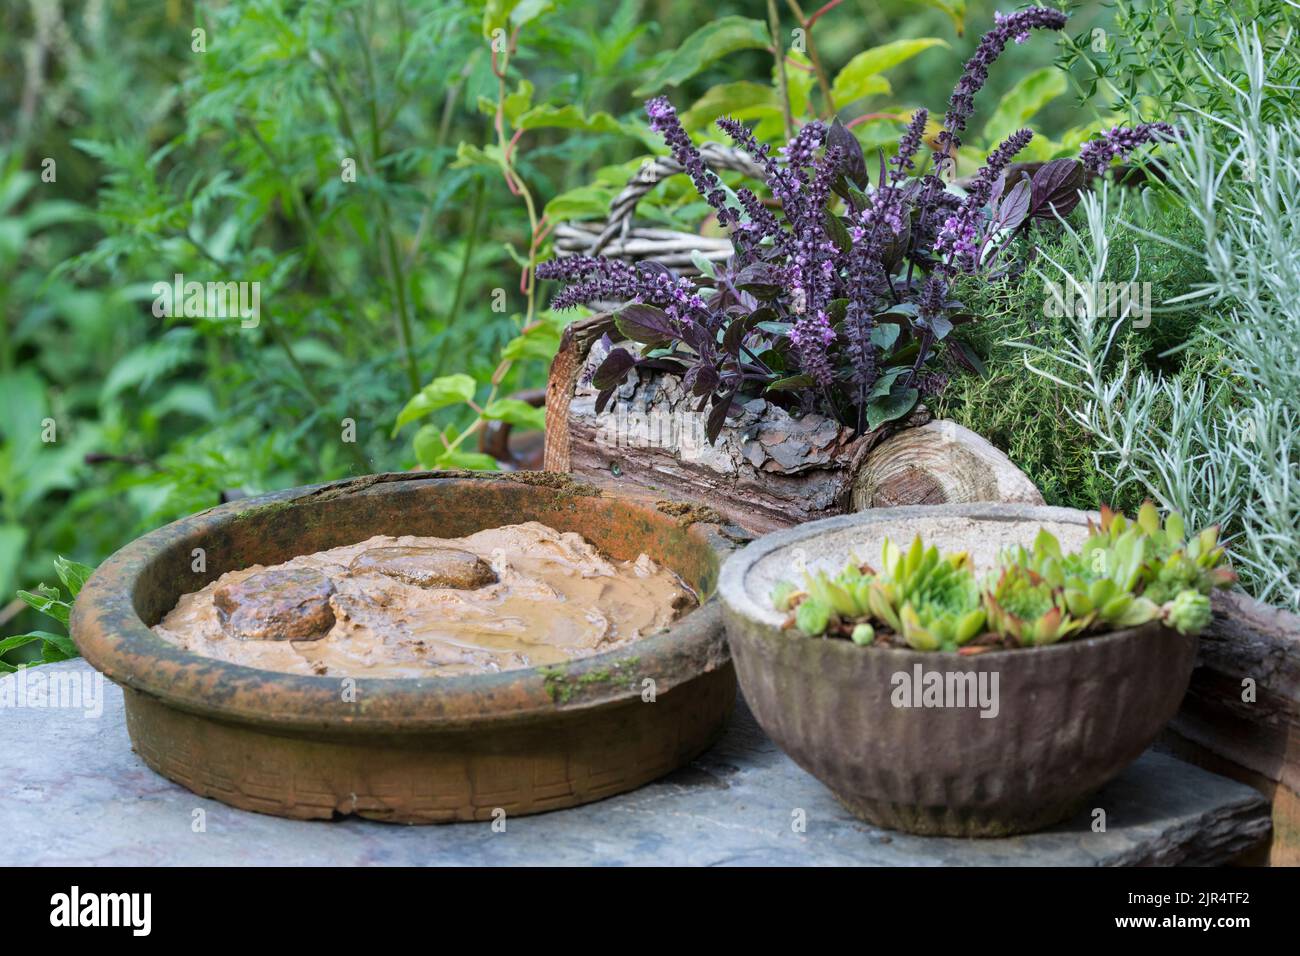 Plato con arcilla húmeda en el jardín como una oportunidad para que aves e insectos encuentren material de anidación, Alemania Foto de stock